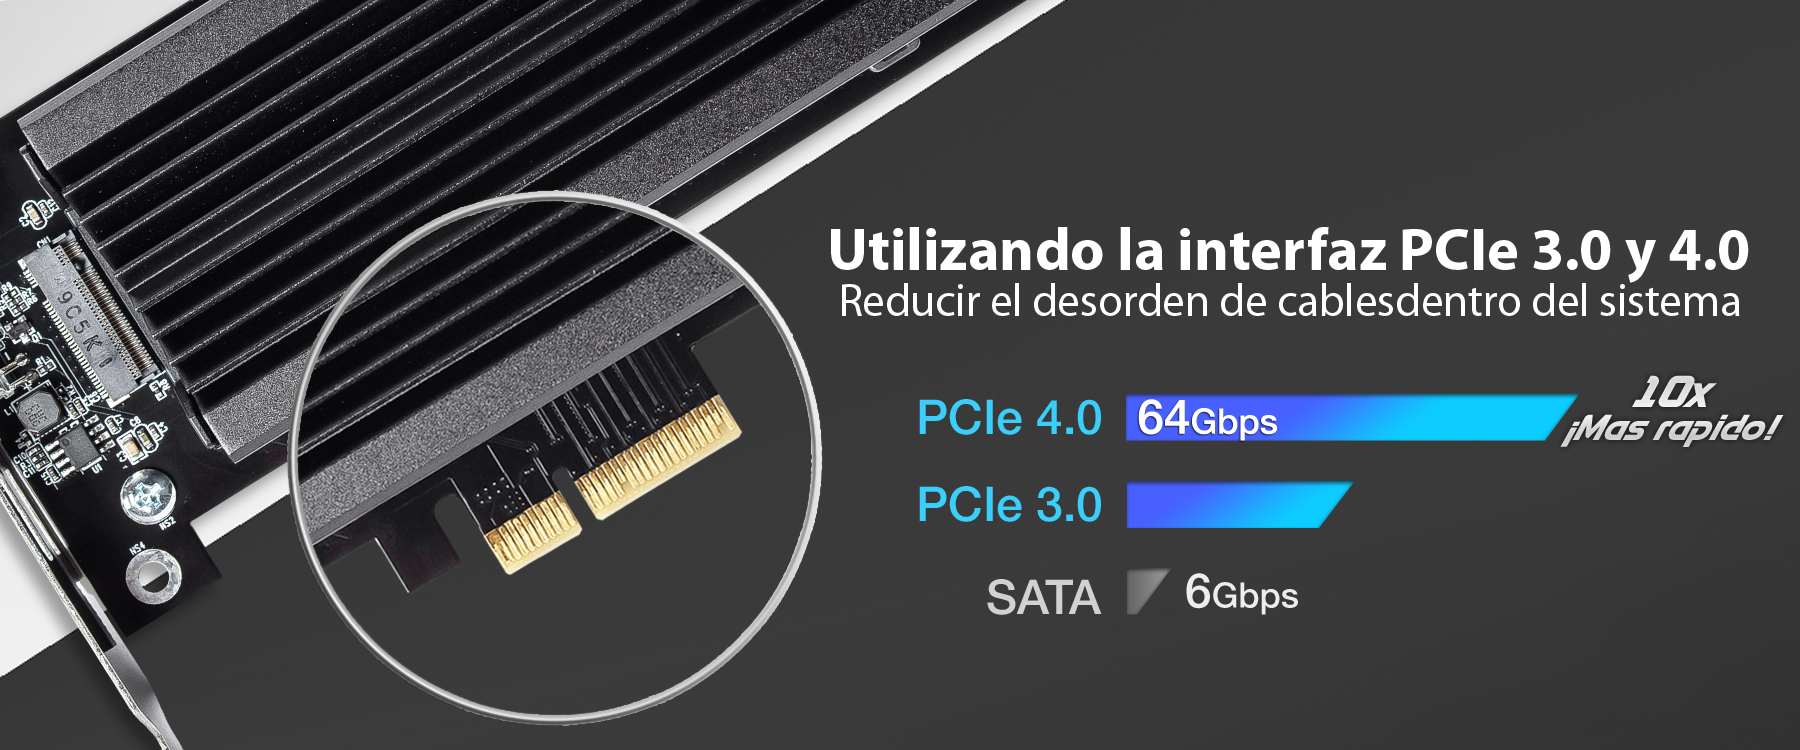 Foto de la interfaz PCIe 4.0 que reduce el desorden de los cables